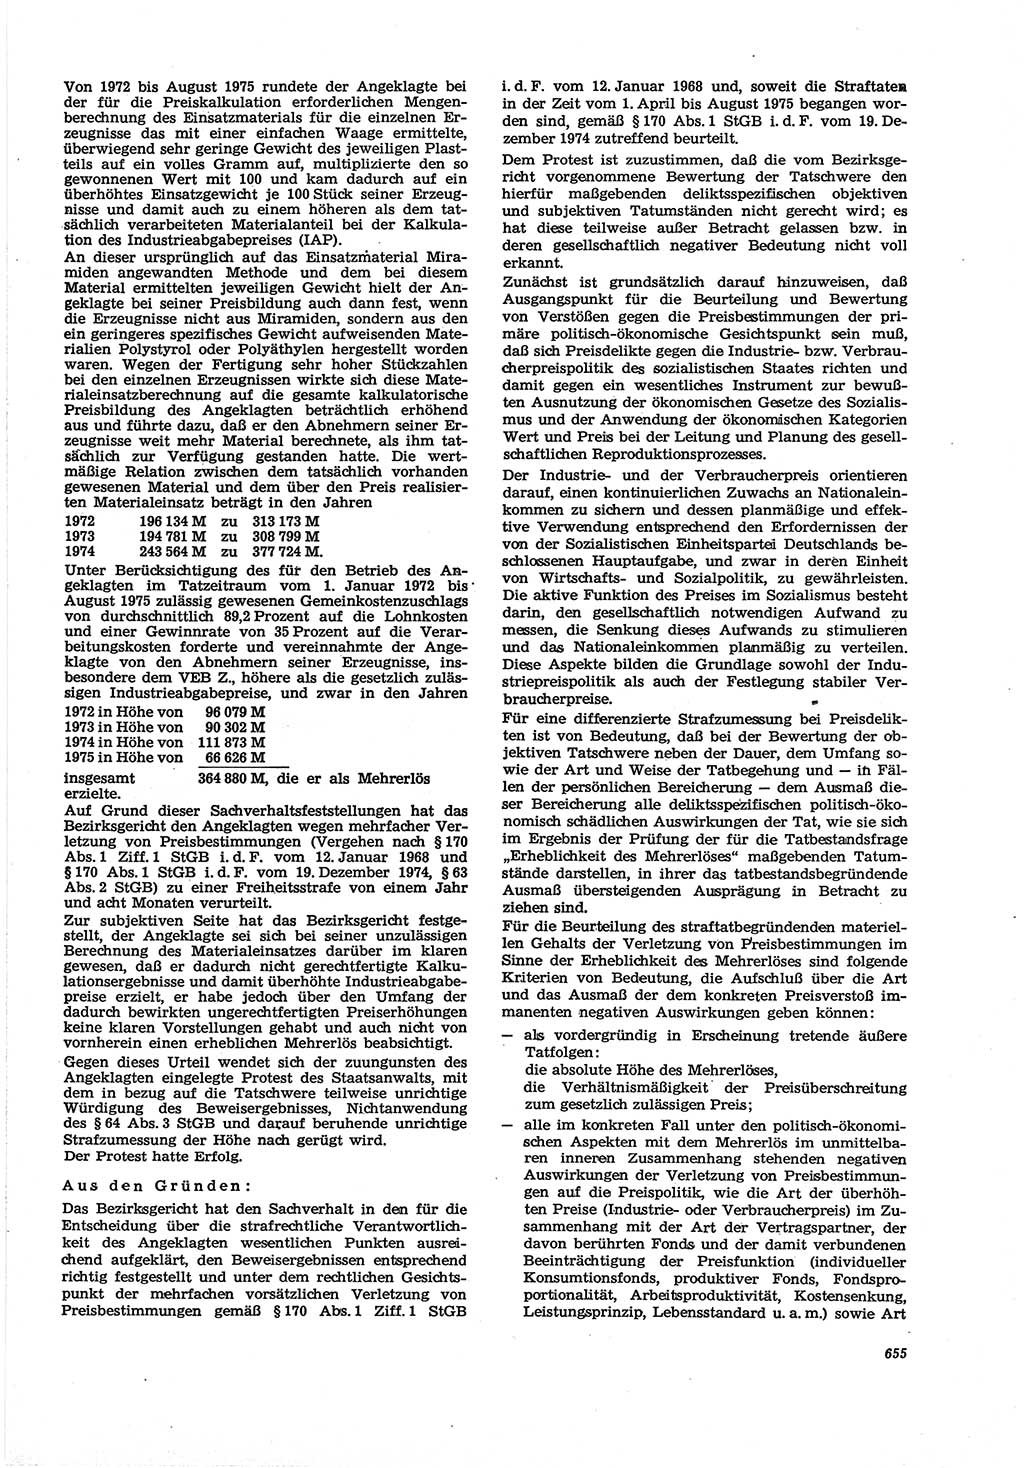 Neue Justiz (NJ), Zeitschrift für Recht und Rechtswissenschaft [Deutsche Demokratische Republik (DDR)], 30. Jahrgang 1976, Seite 655 (NJ DDR 1976, S. 655)